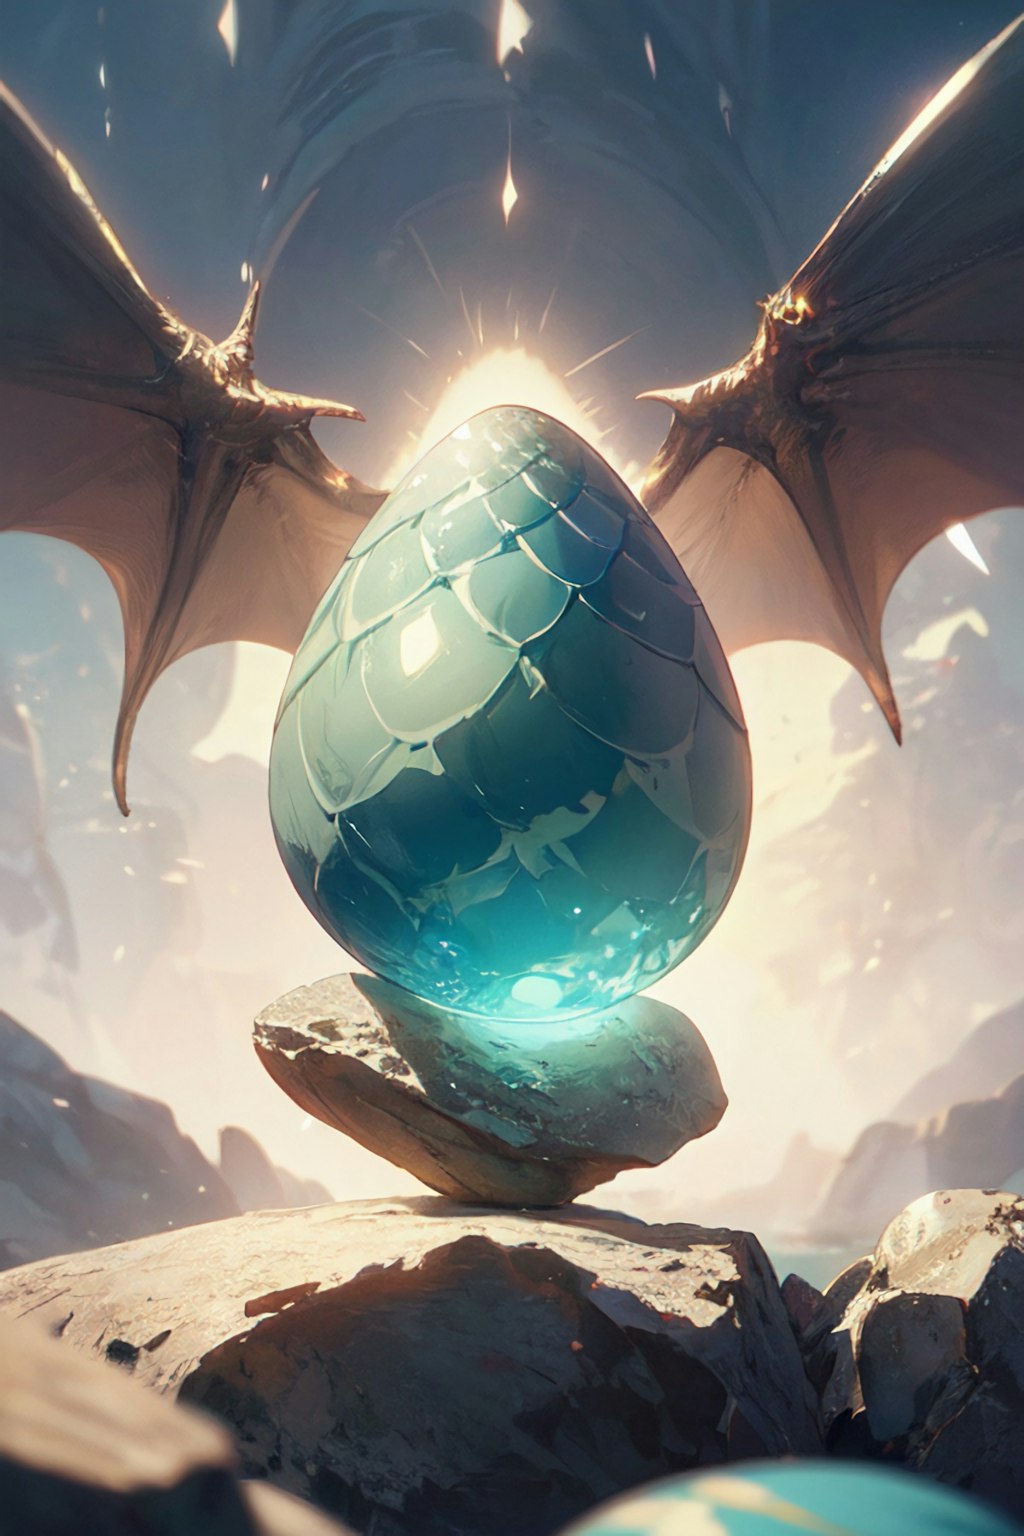 龍の卵、それは誰も見たことがない秘宝